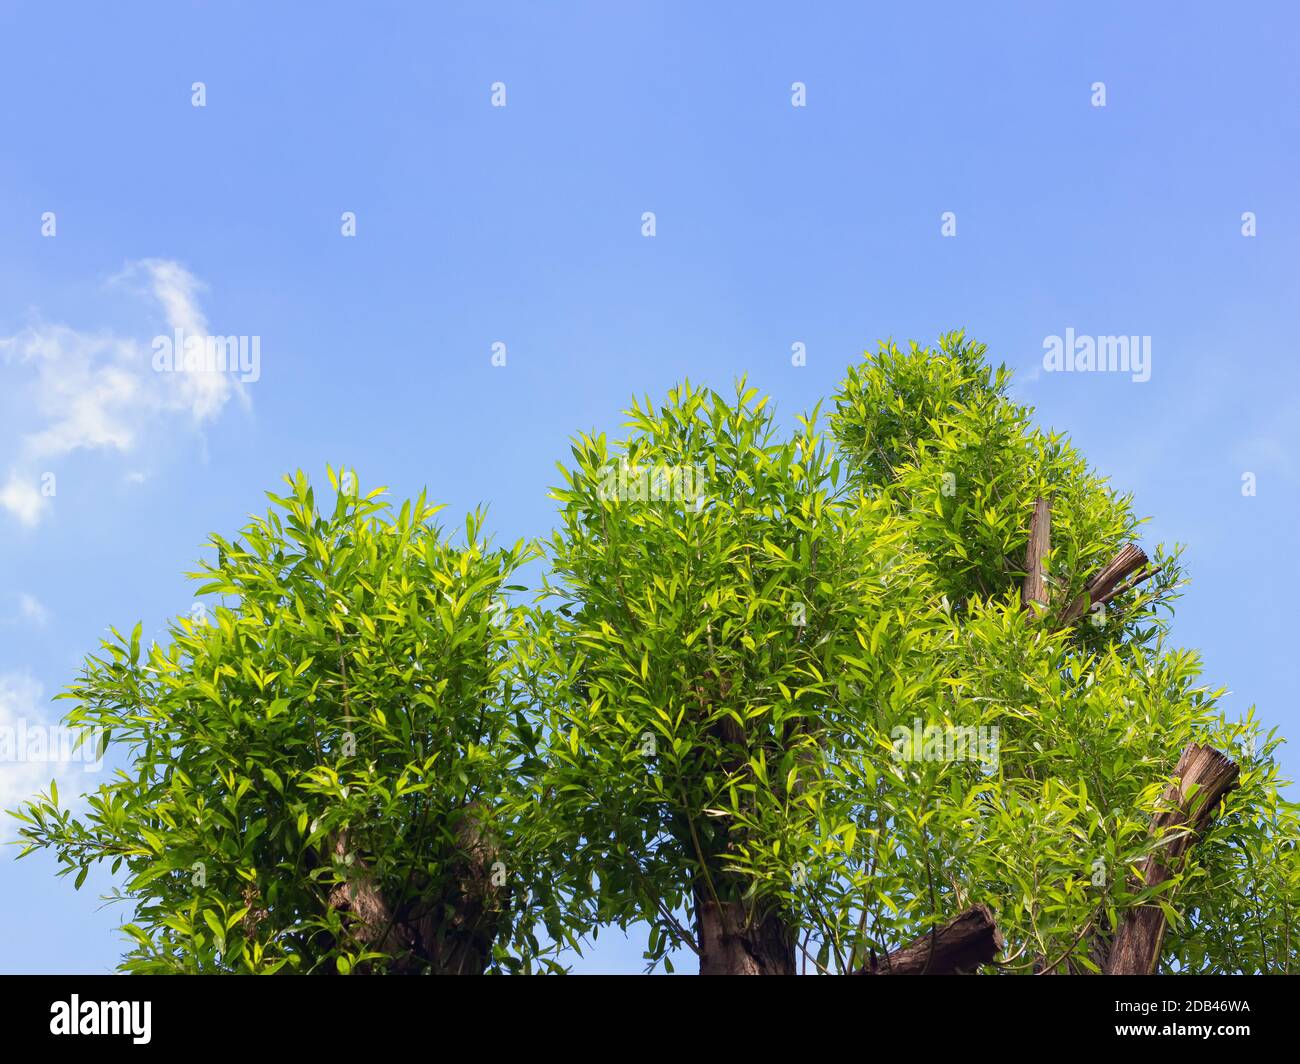 Le sommet d'une couronne de saule, avec de nouvelles branches vertes contre le ciel bleu du printemps. Espace pour la copie et la conception. Banque D'Images